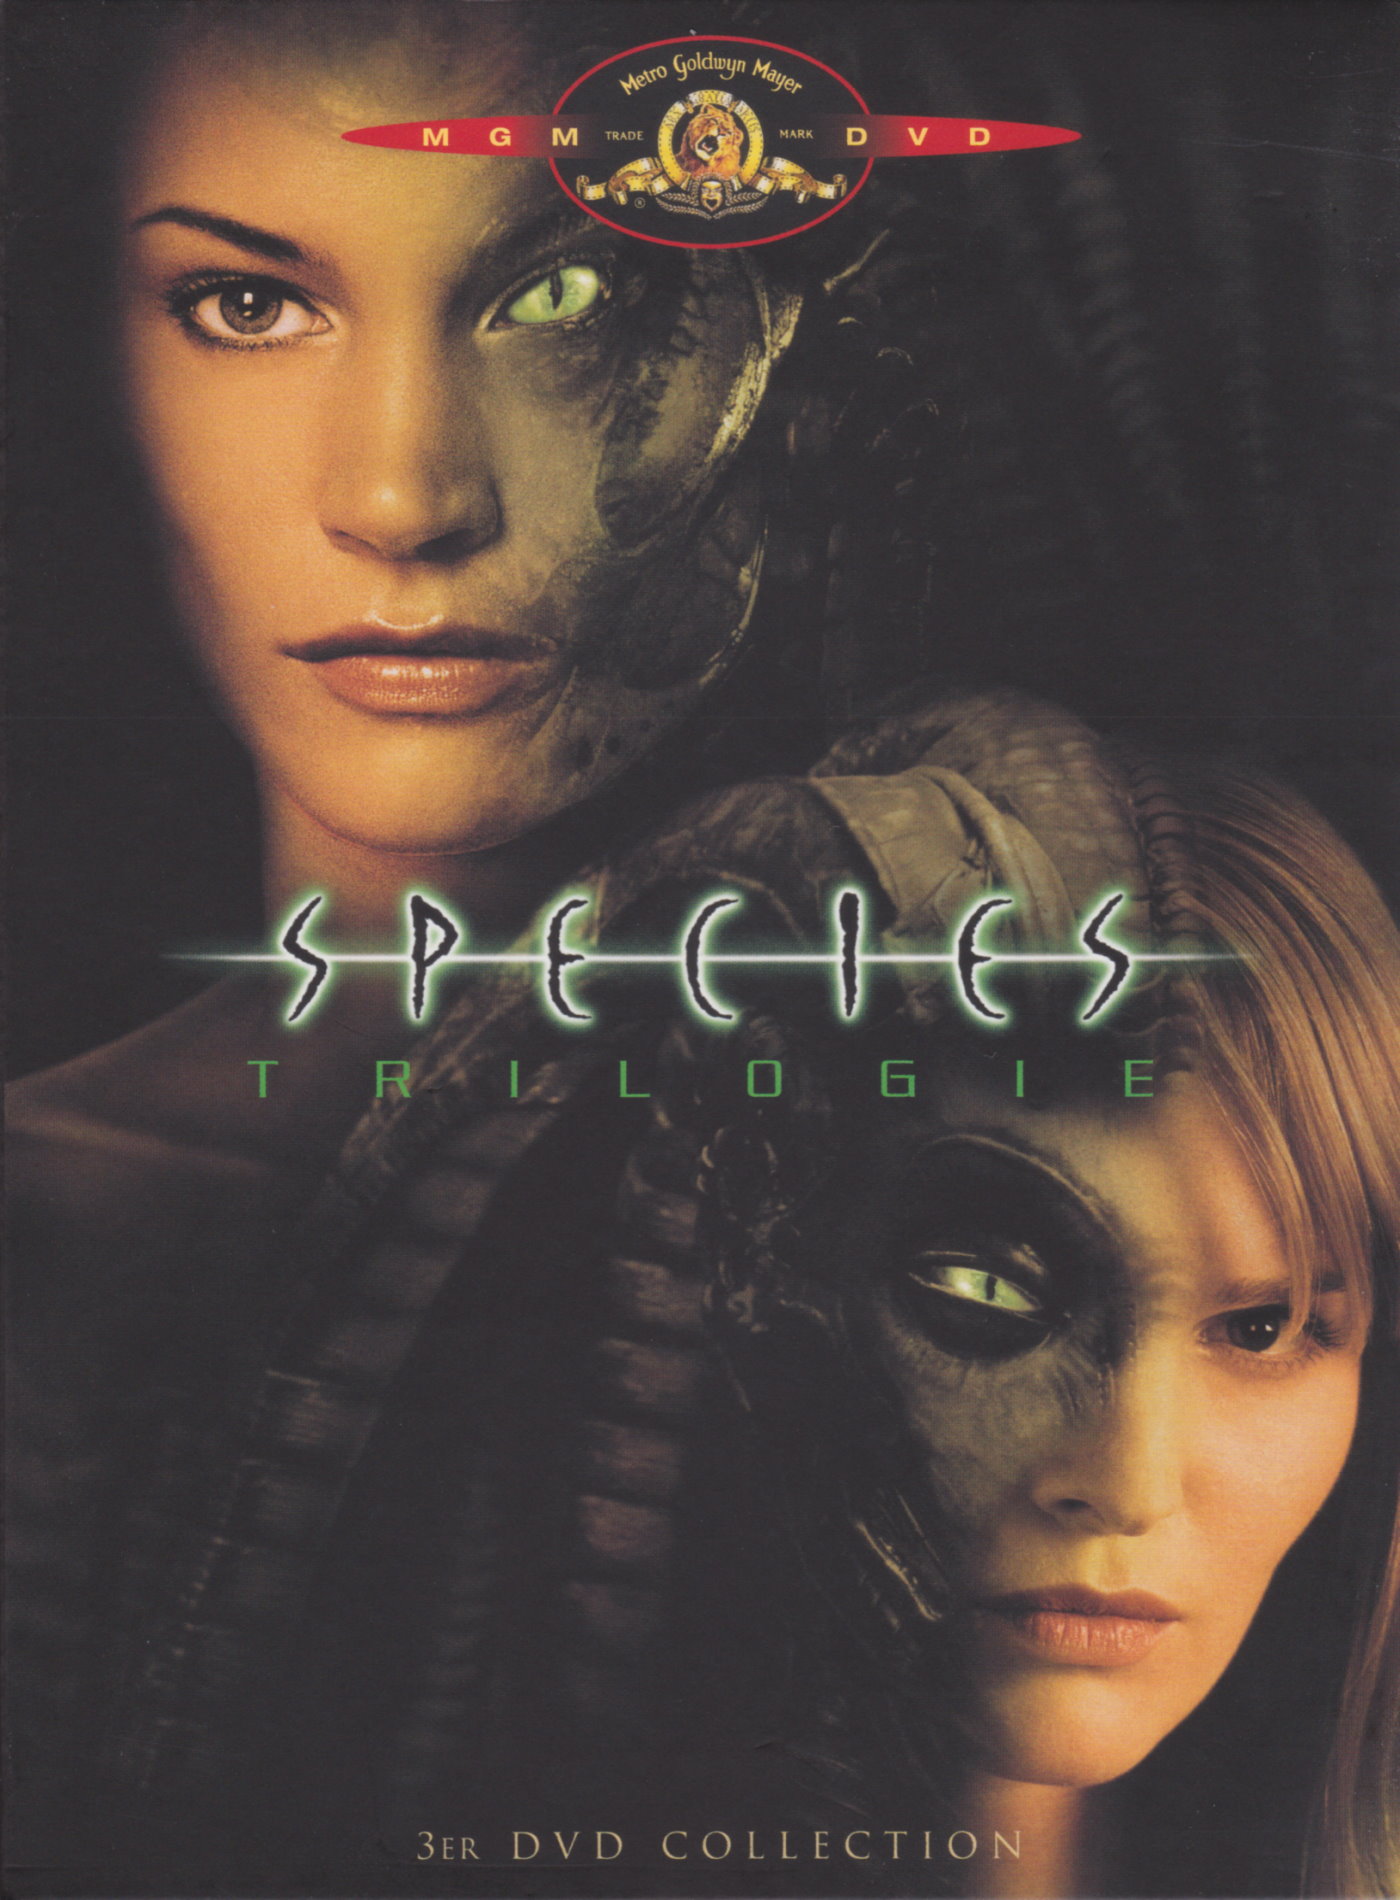 Cover - Species 2.jpg